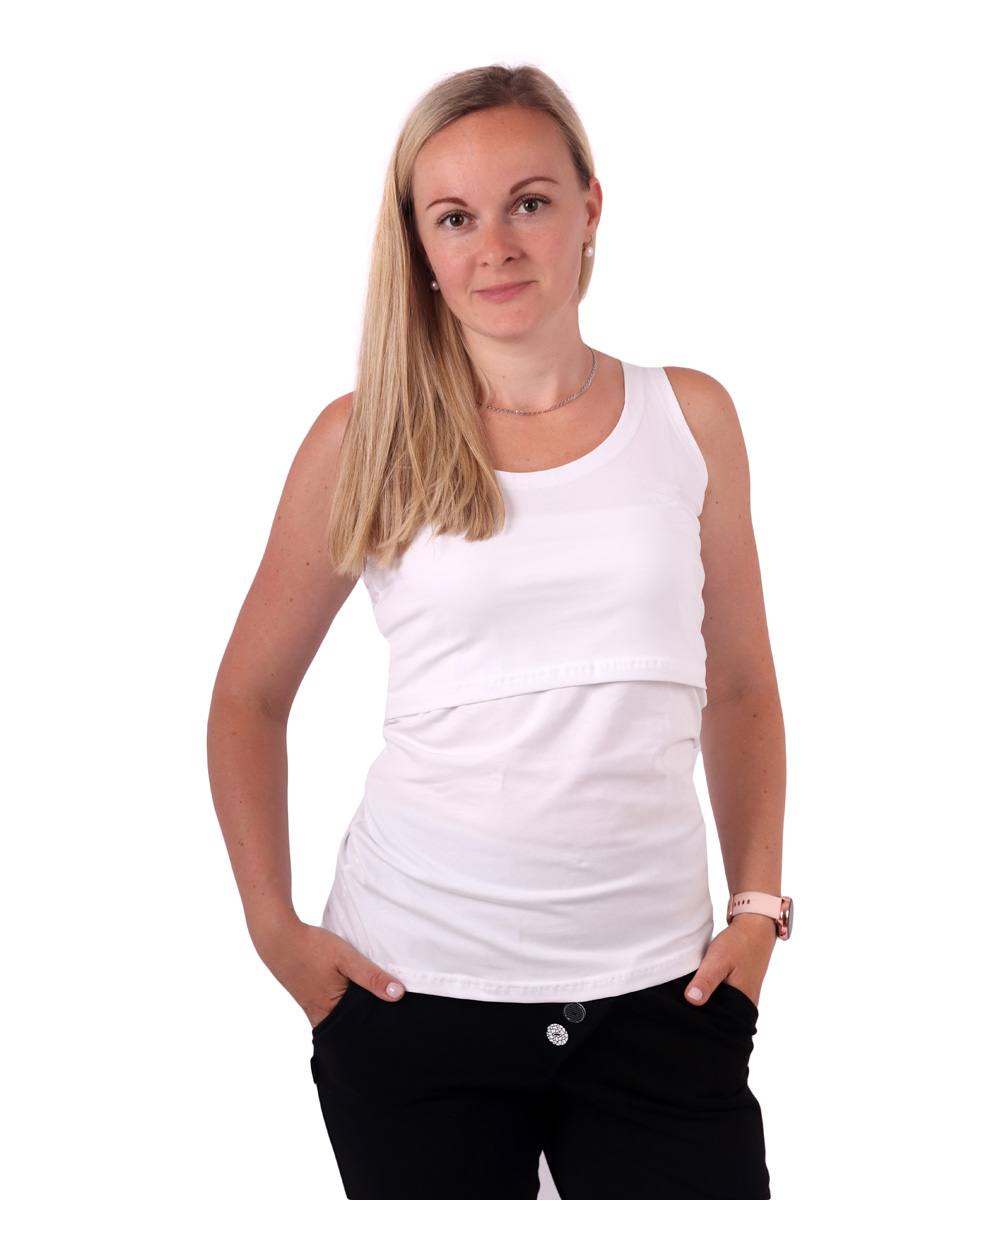 Breast-feeding T-shirt Katerina, no sleeves, WHITE XS/S